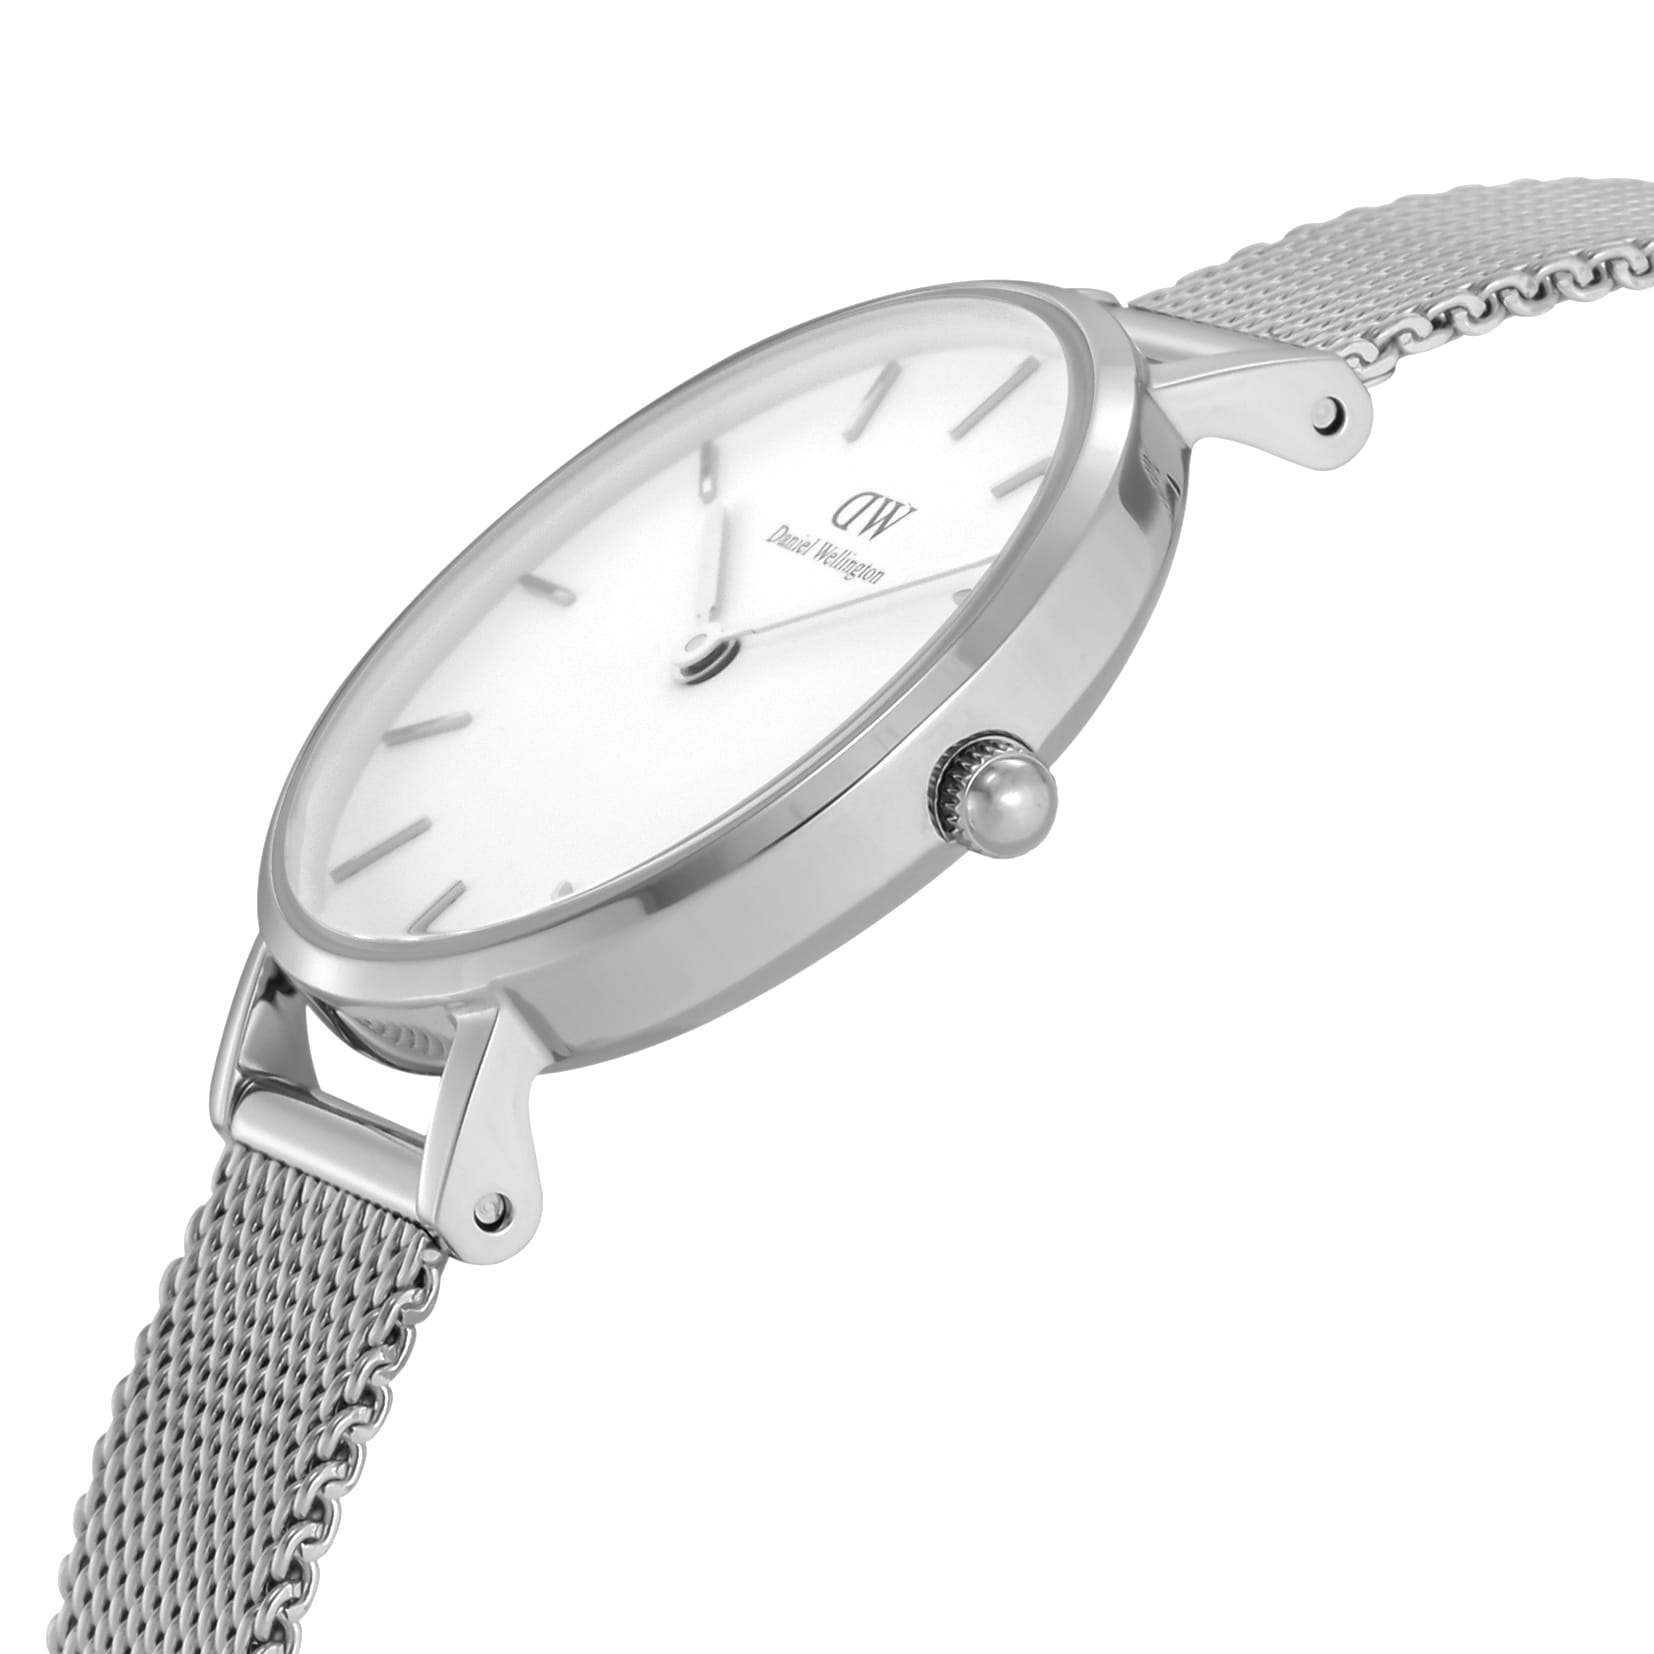 ダニエル ウェリントン DANIEL WELLINGTON 腕時計 ユニセックス Classic Petite White Sterling DW00100220